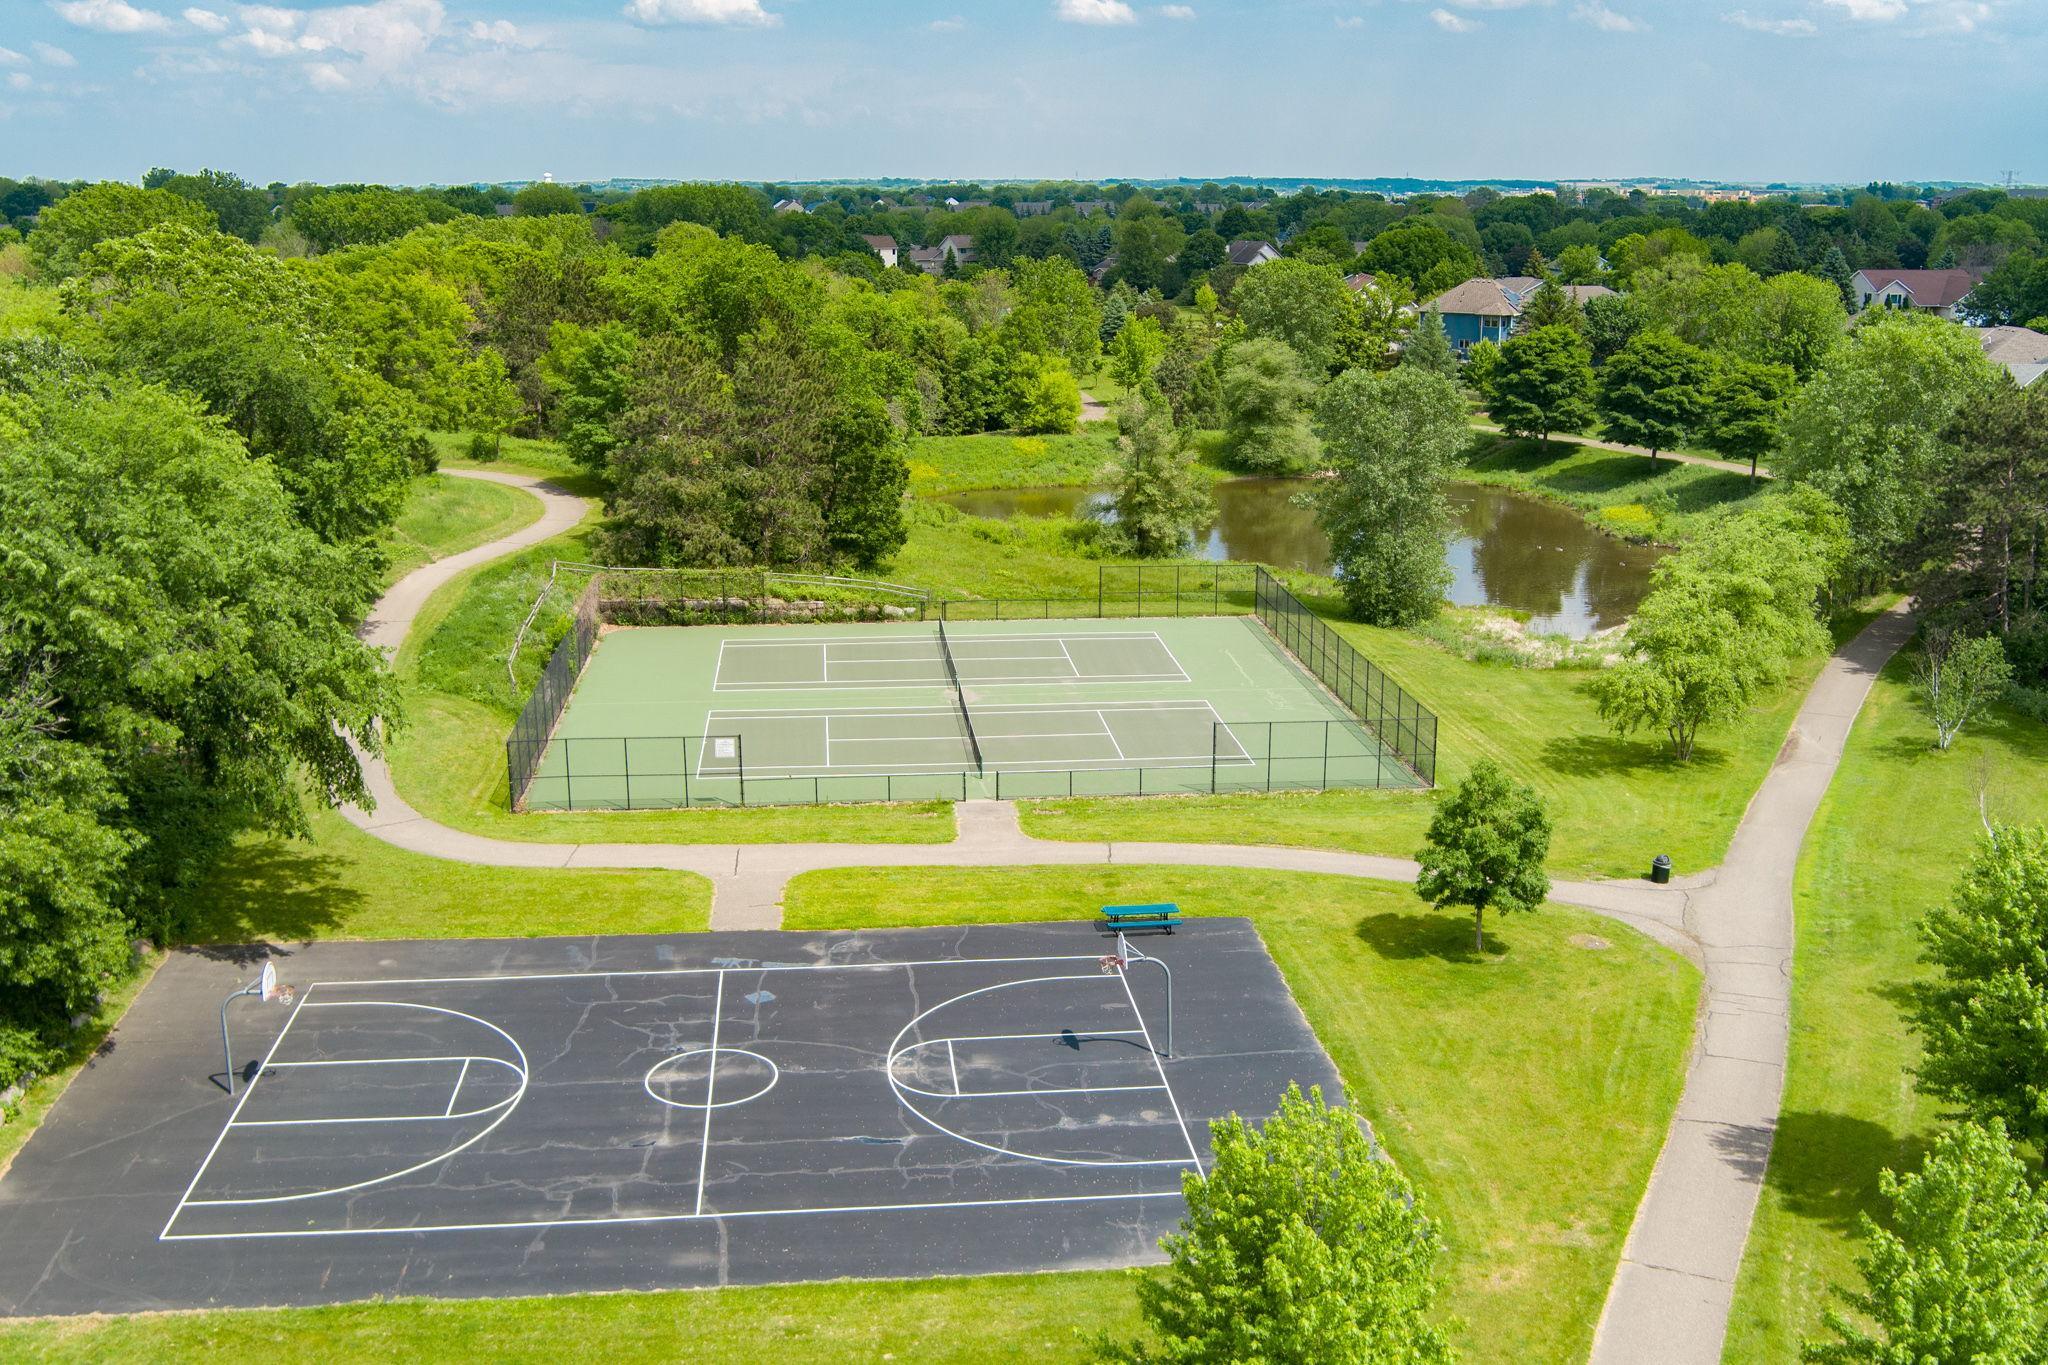 {lay tennis and basketball with neighbors!